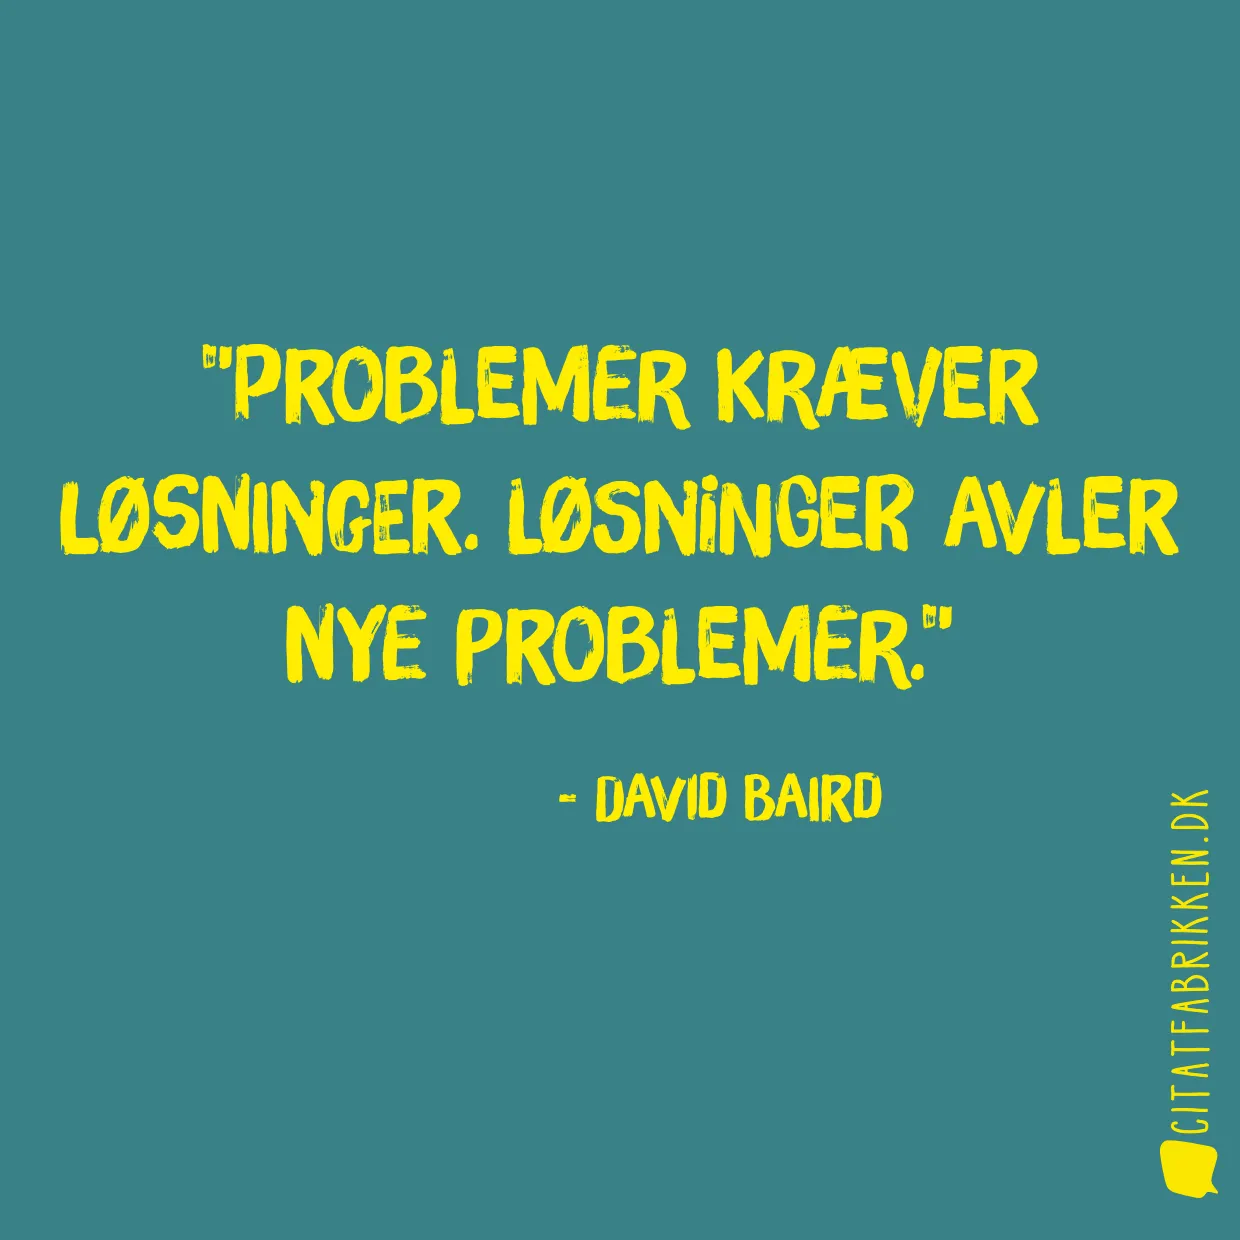 Problemer kræver løsninger. Løsninger avler nye problemer.